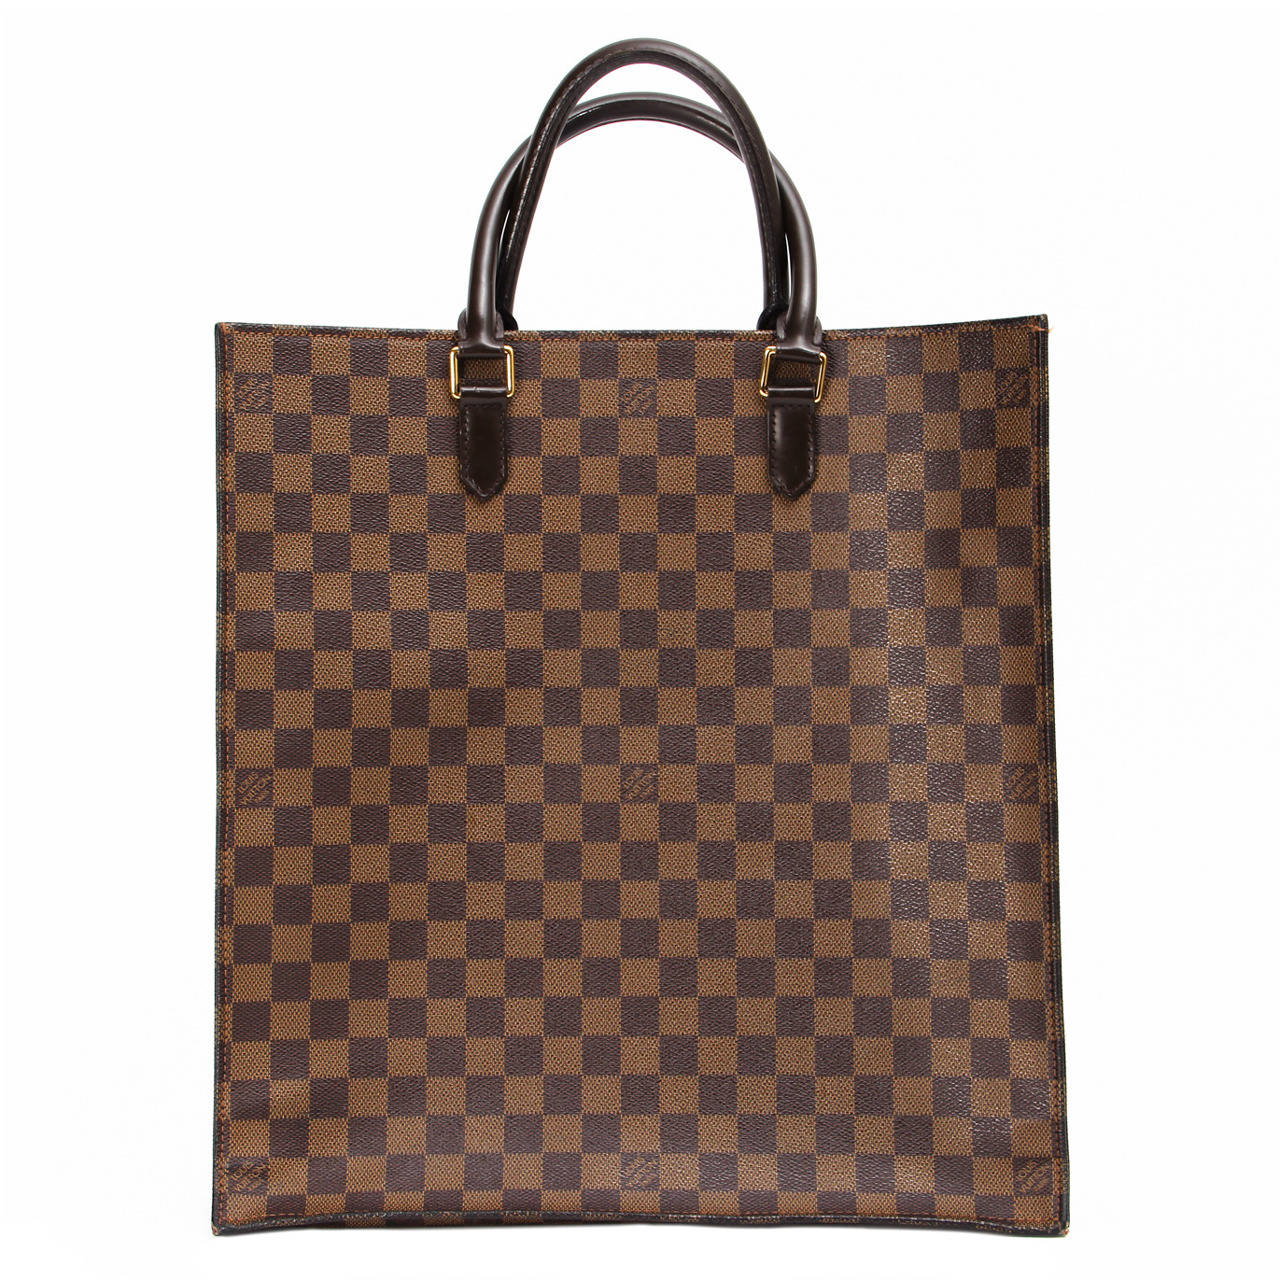 Checked pattern Louis Vuitton Handbag basket at 1stdibs